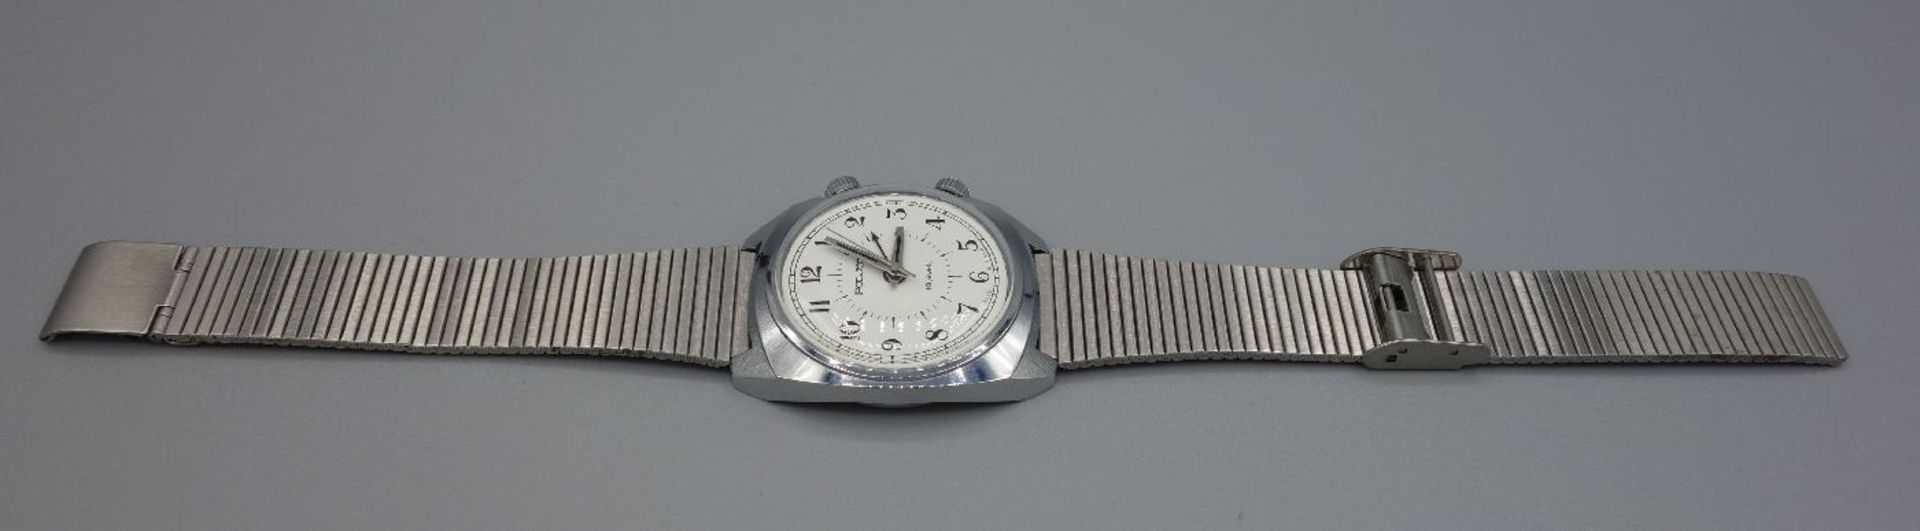 ZWEI ARMBANDUHREN MIT WECKFUNKTION / wristwatches, Russland, Manufaktur Poljot. Handaufzug. 1) - Image 2 of 8